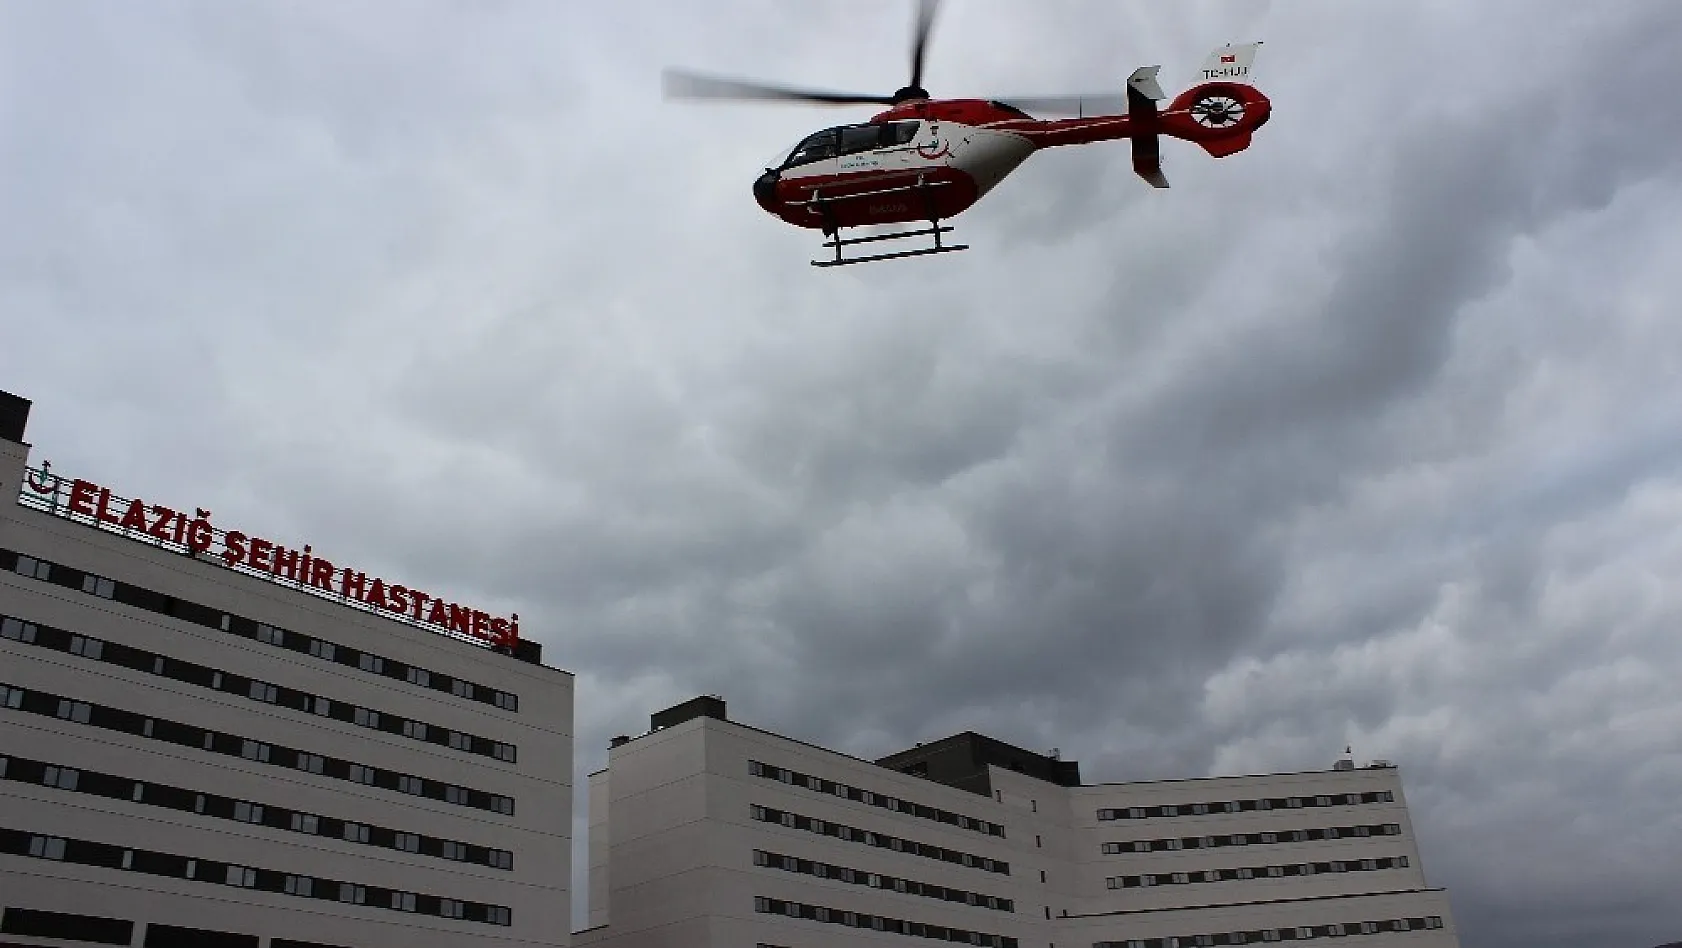 Başhekim Öztürk'Helikopterle gelen hastamızın durumu iyi' 